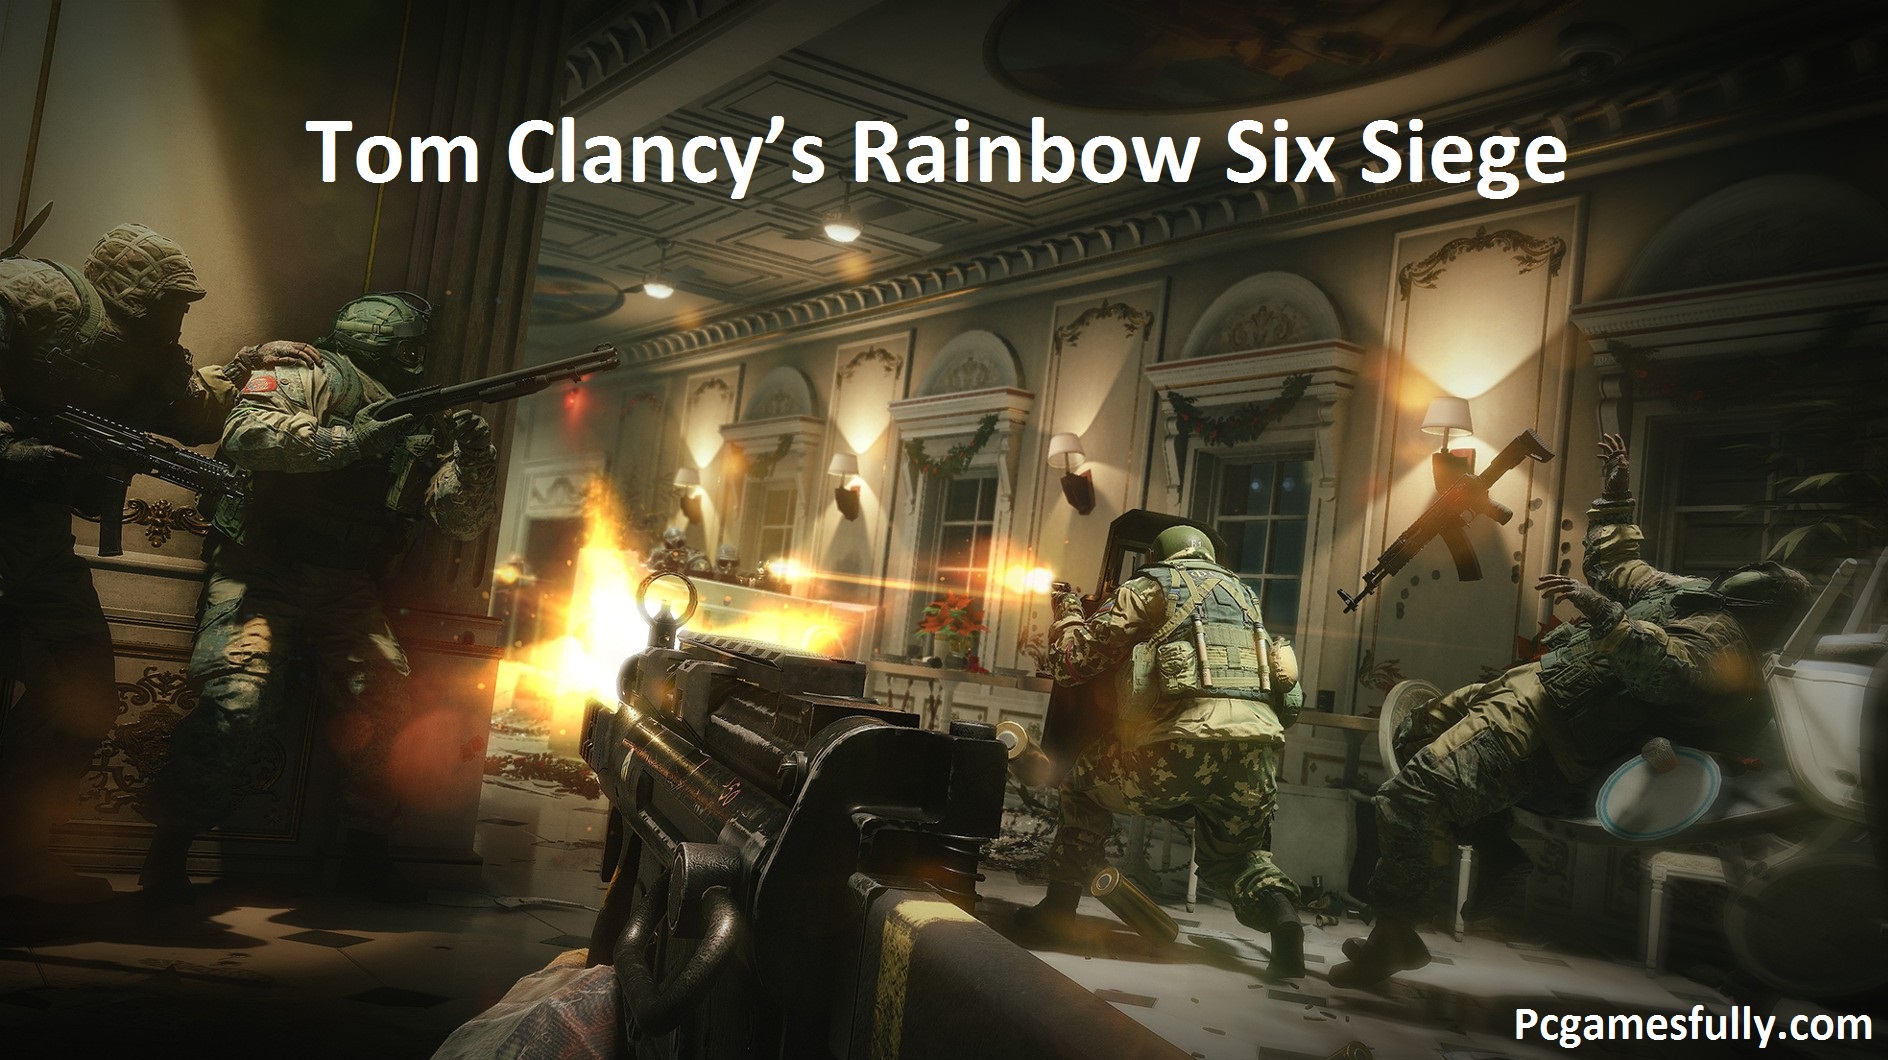 Tom Clancy’s Rainbow Six Siege PC Game